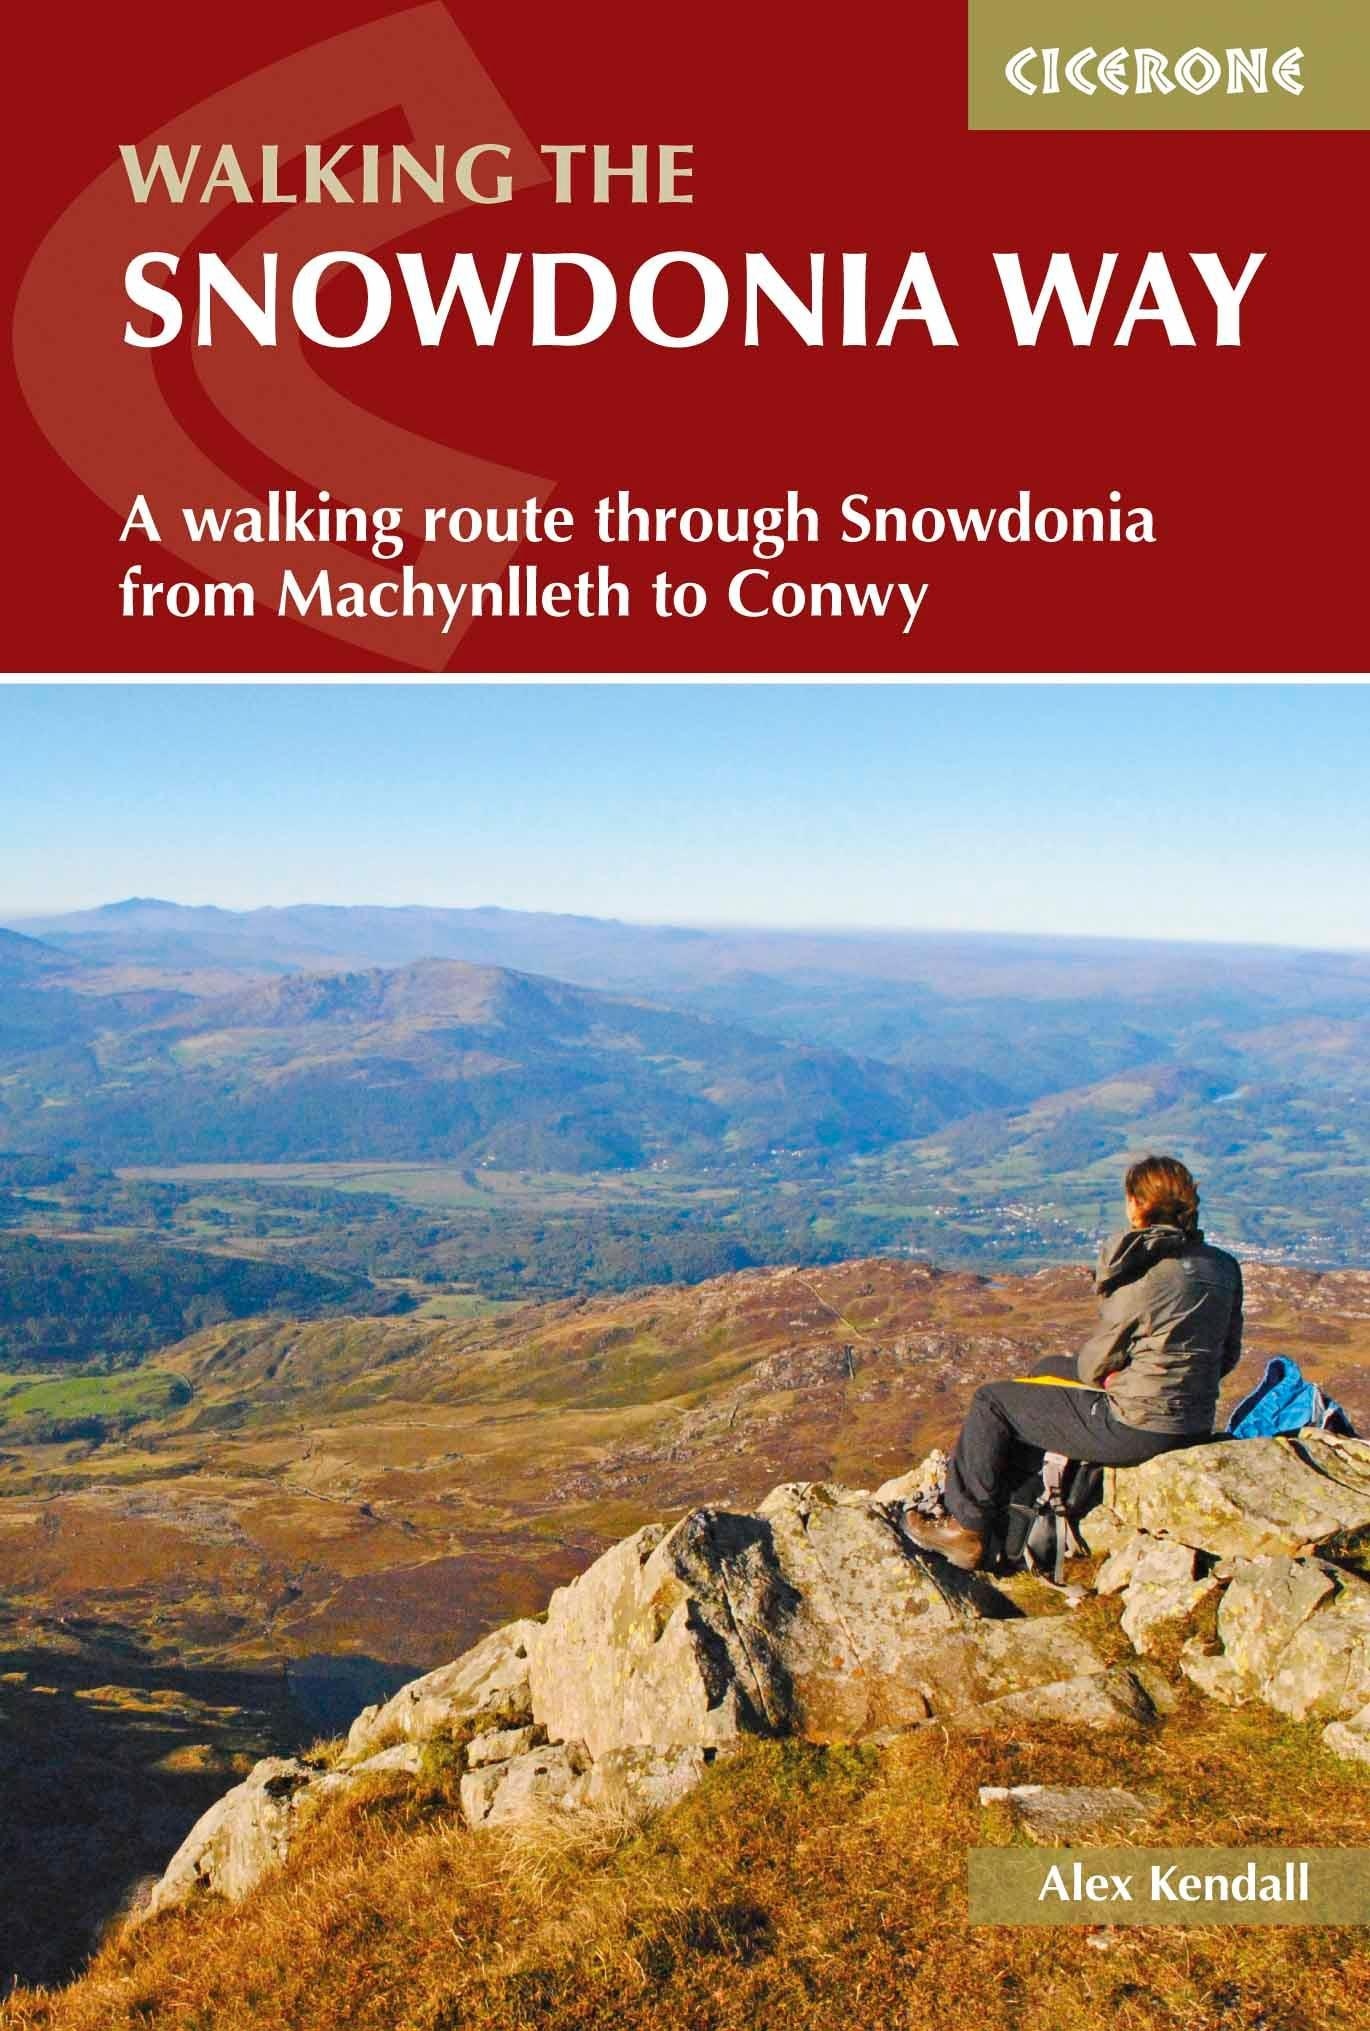 The Snowdonia Way, Ratgeber von Alex Kendall